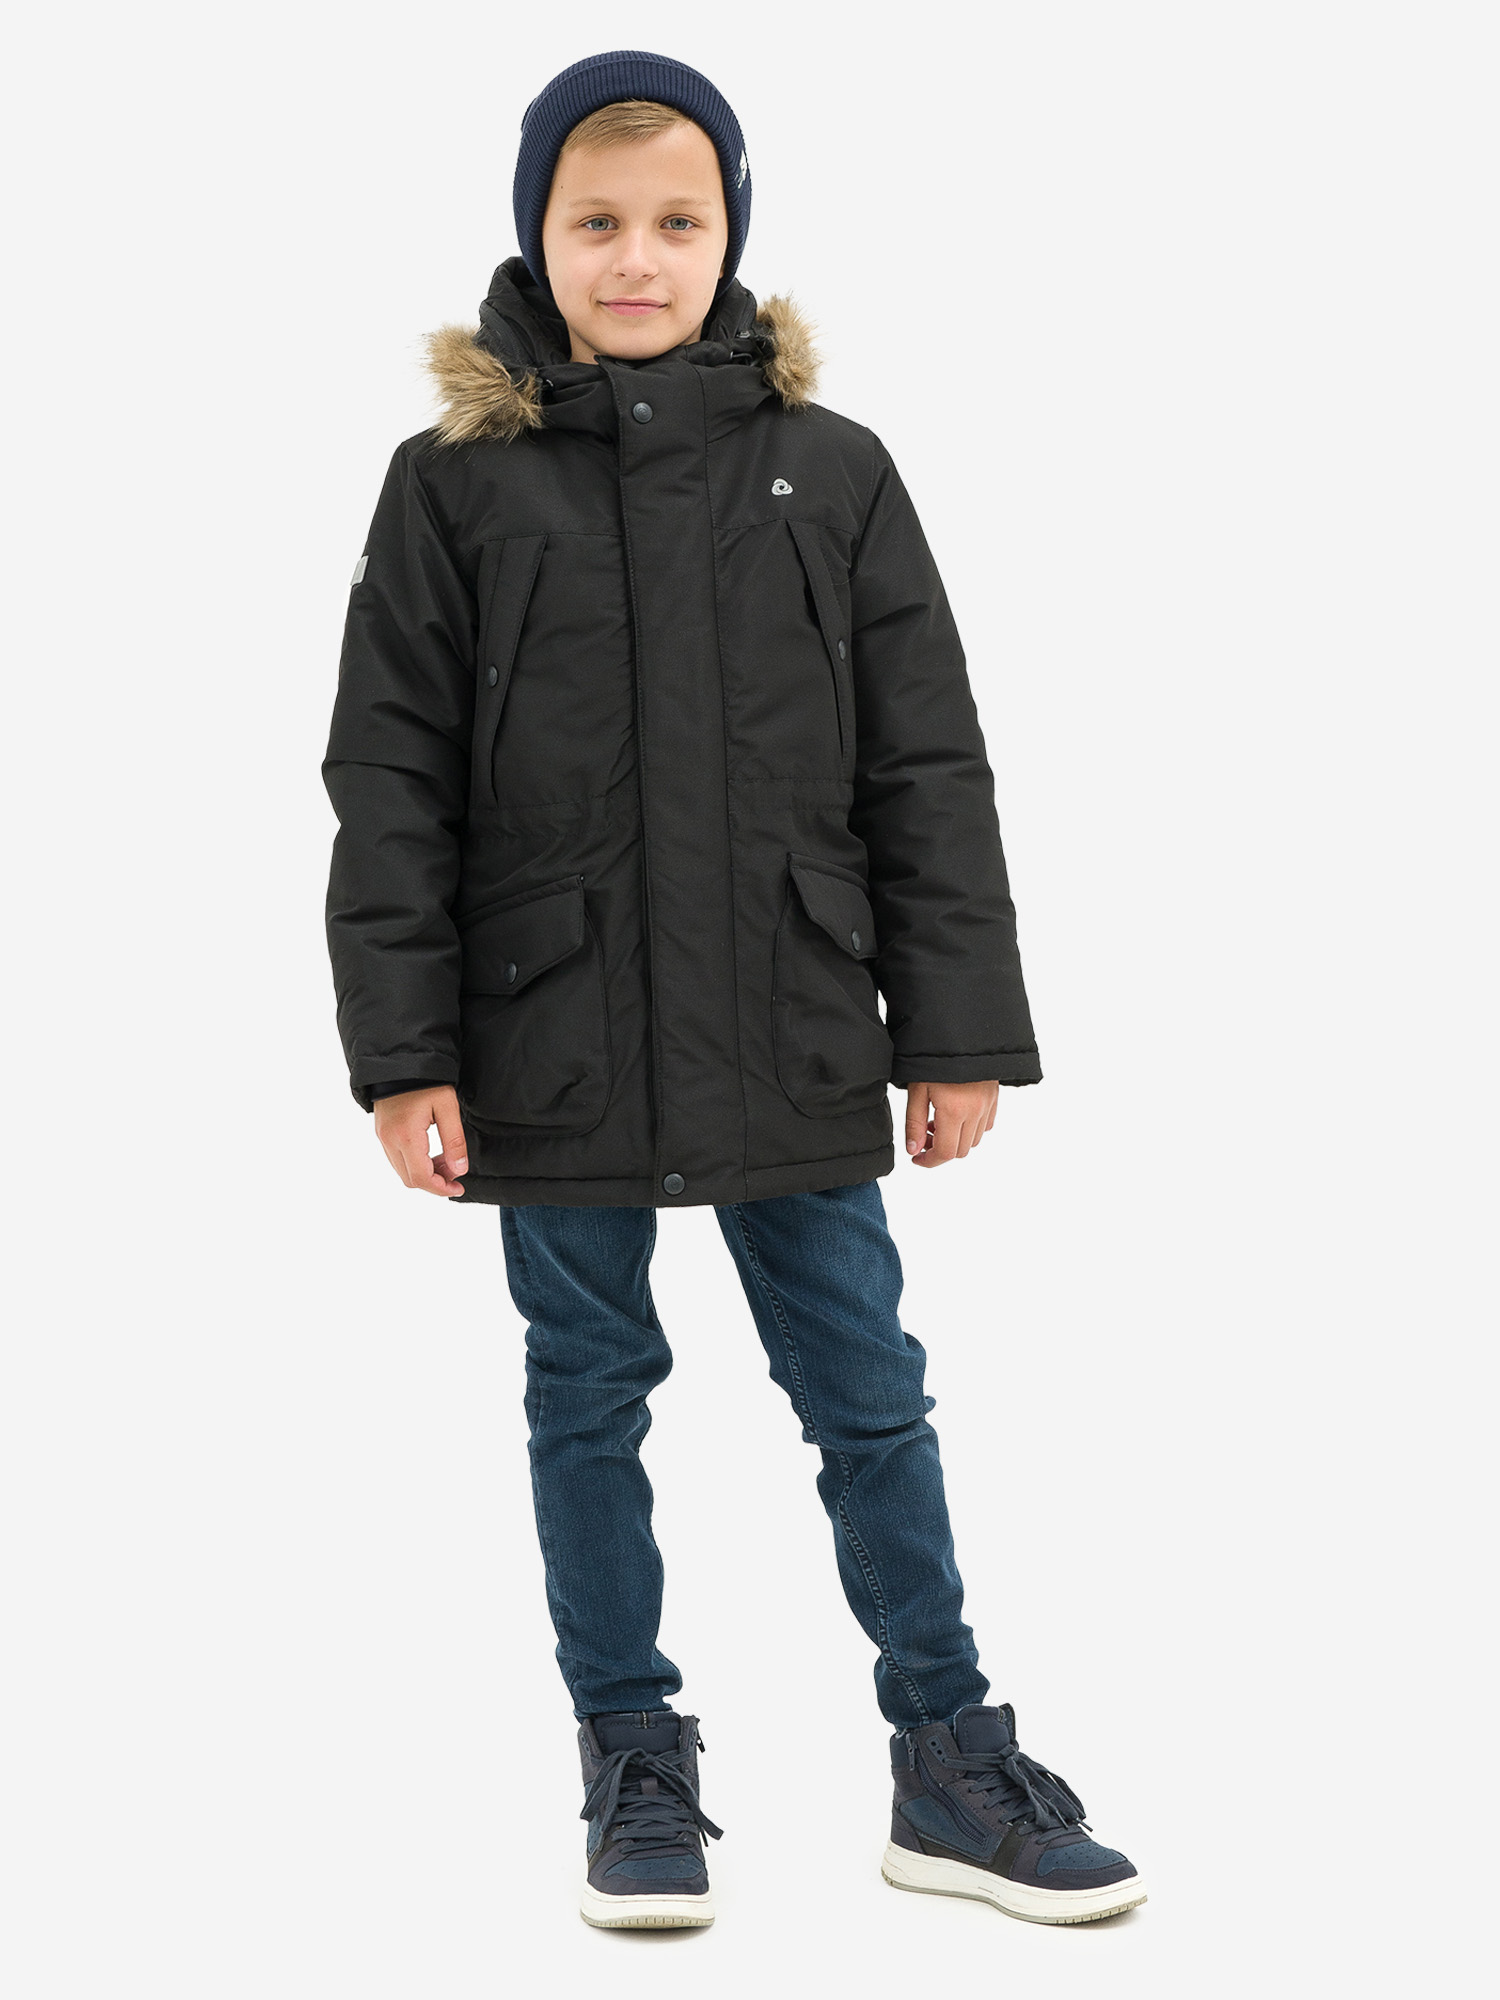 Куртка детская зимняя CosmoTex, Черный